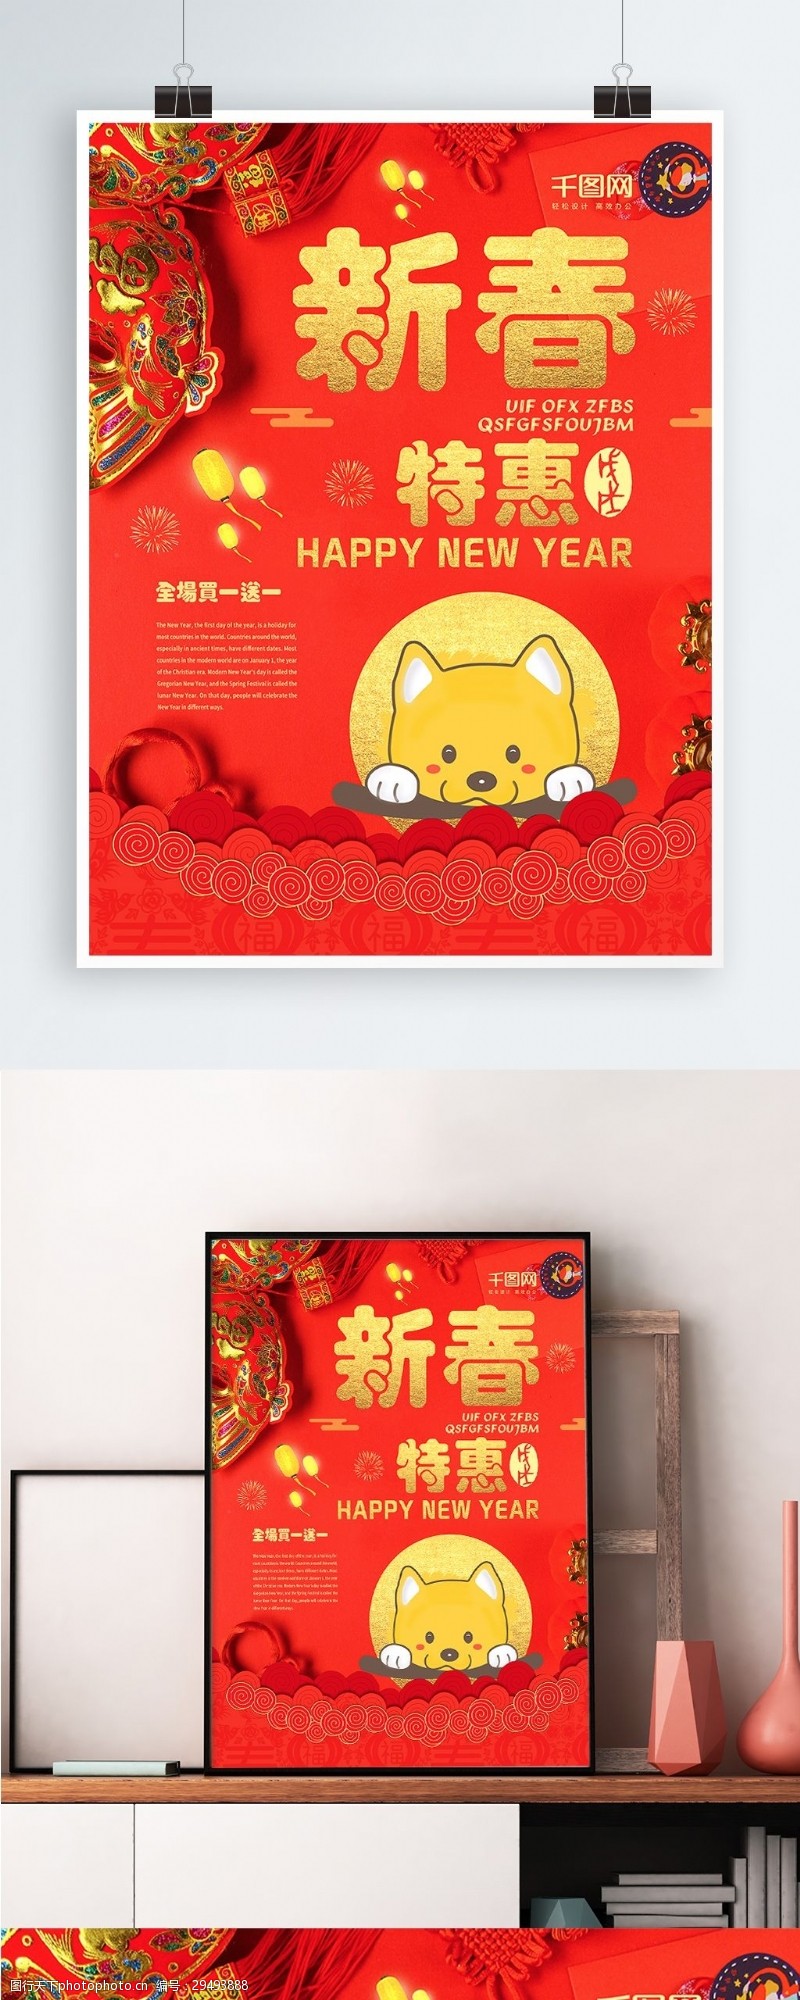 灯布原创插画红色新春特惠狗年商场促销创意海报